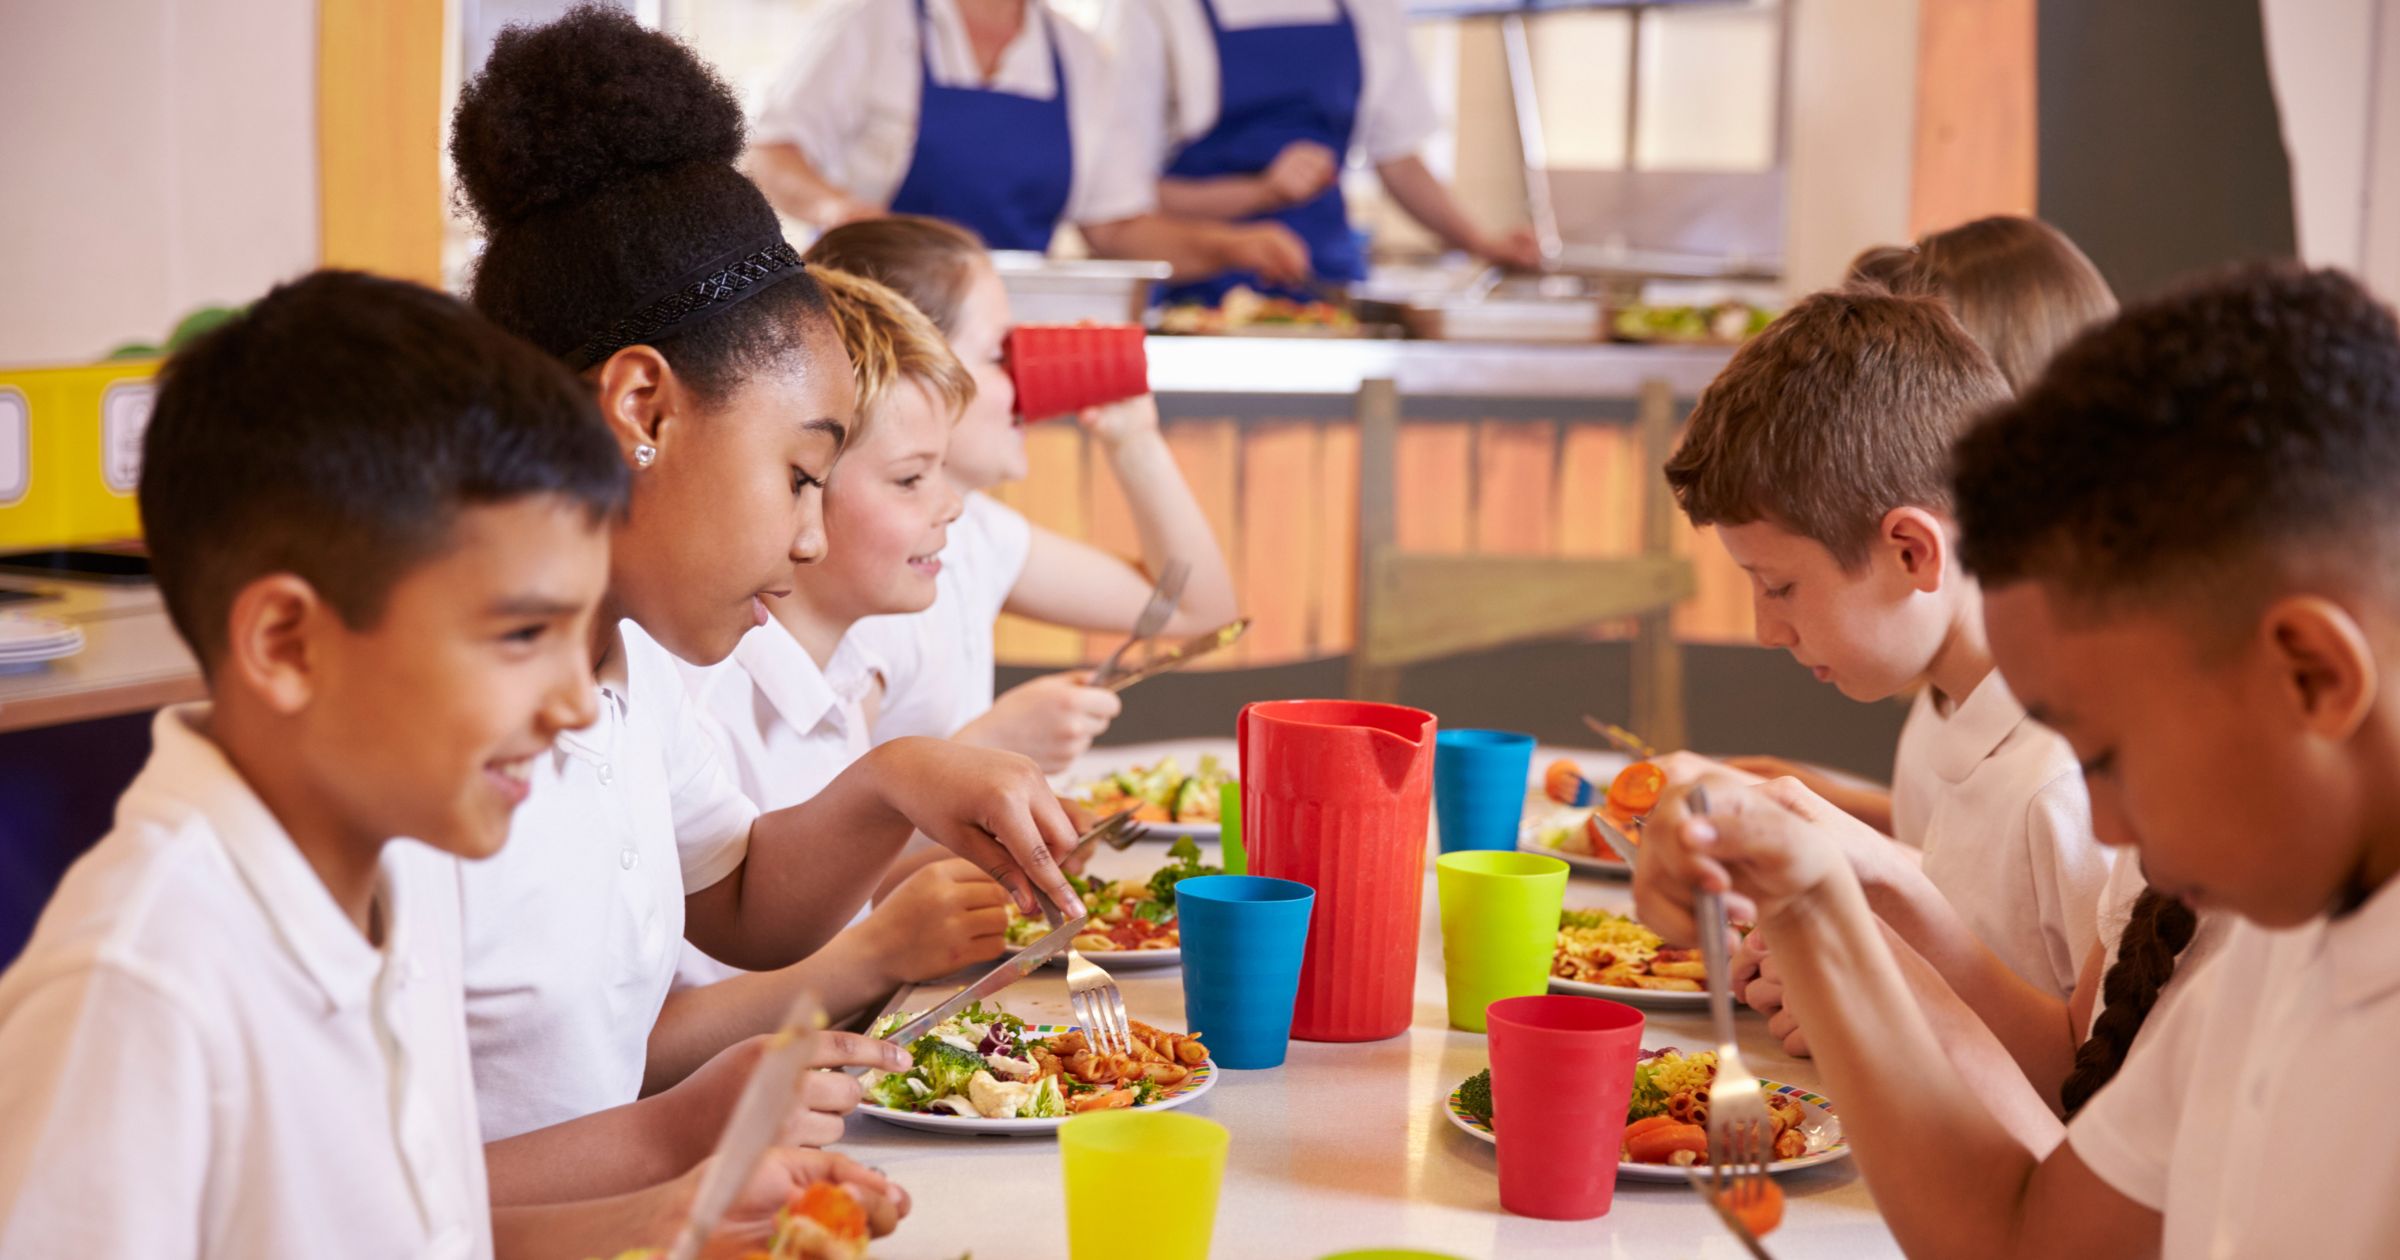 El impacto de los alimentos ultraprocesados en niños